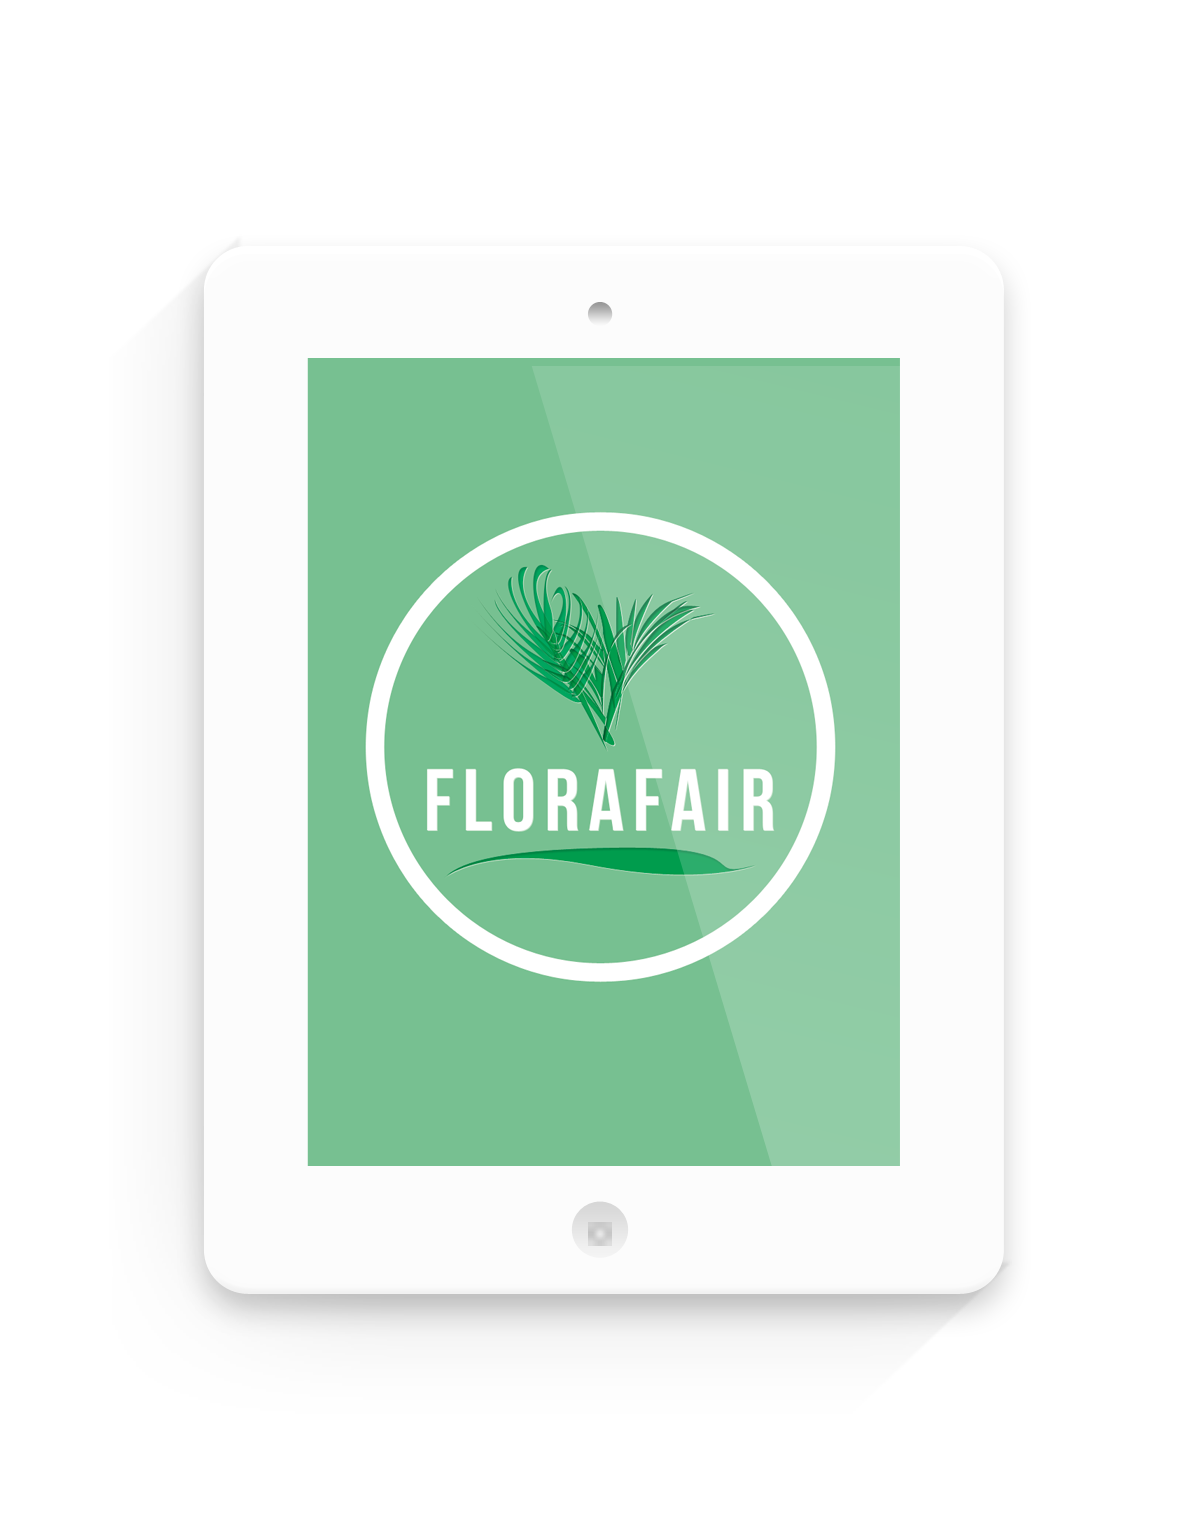 Florafair